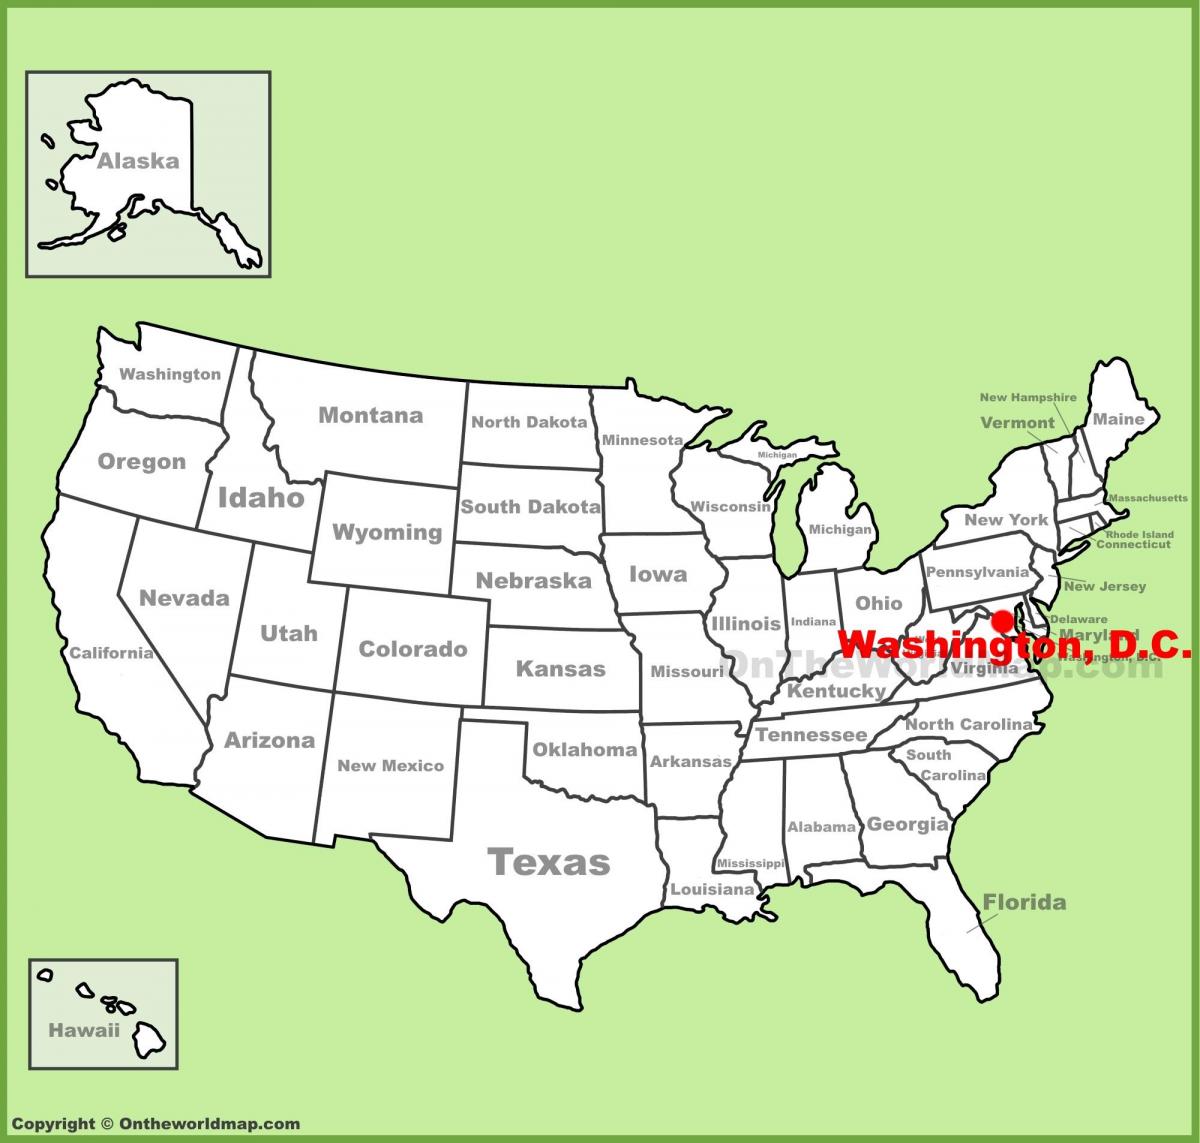 וושינגטון הבירה על המפה של אמריקה